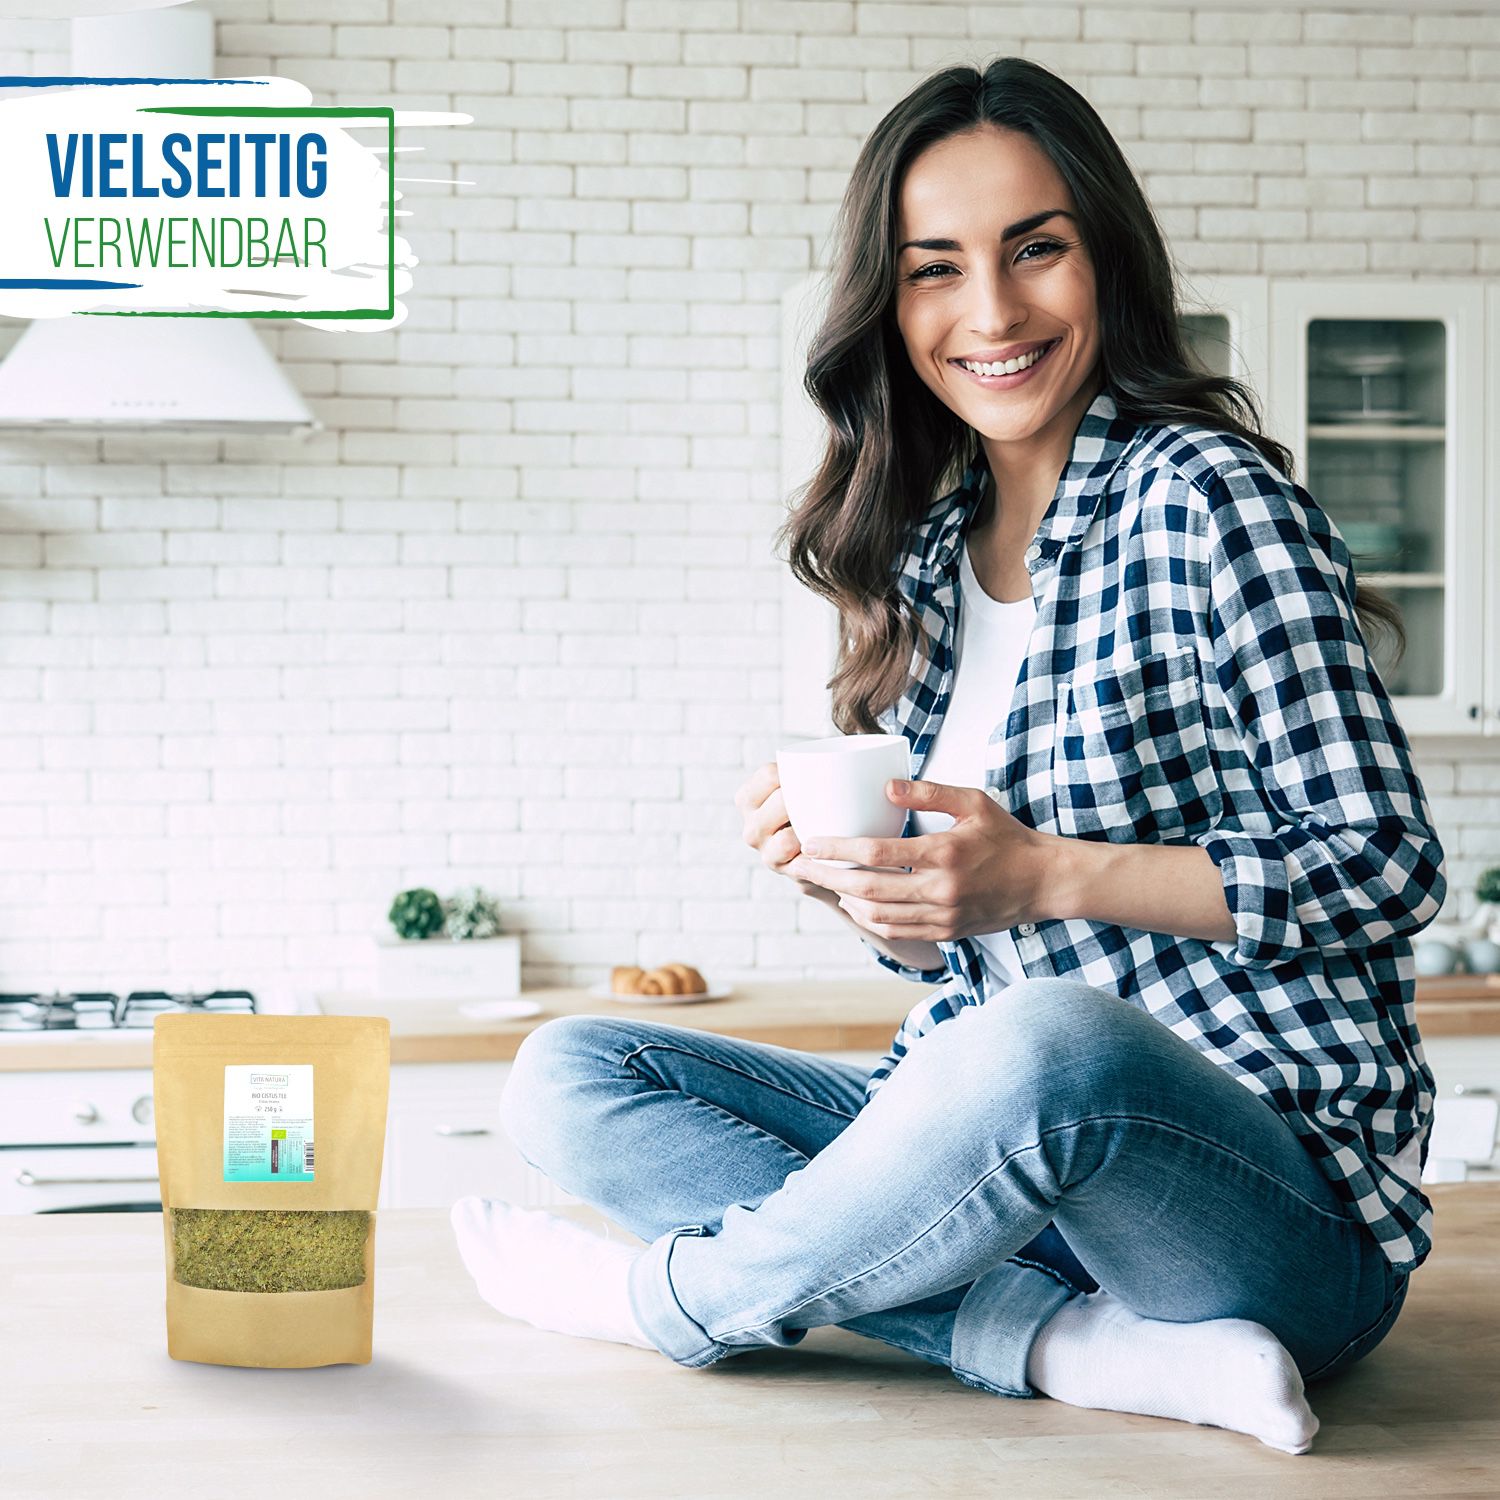 Eine Frau sitzt auf einer Küchenarbeitsplatte. In der Hand hält sie eine Tasse Tee. Vor ihr ein Beutel Moringa Tee